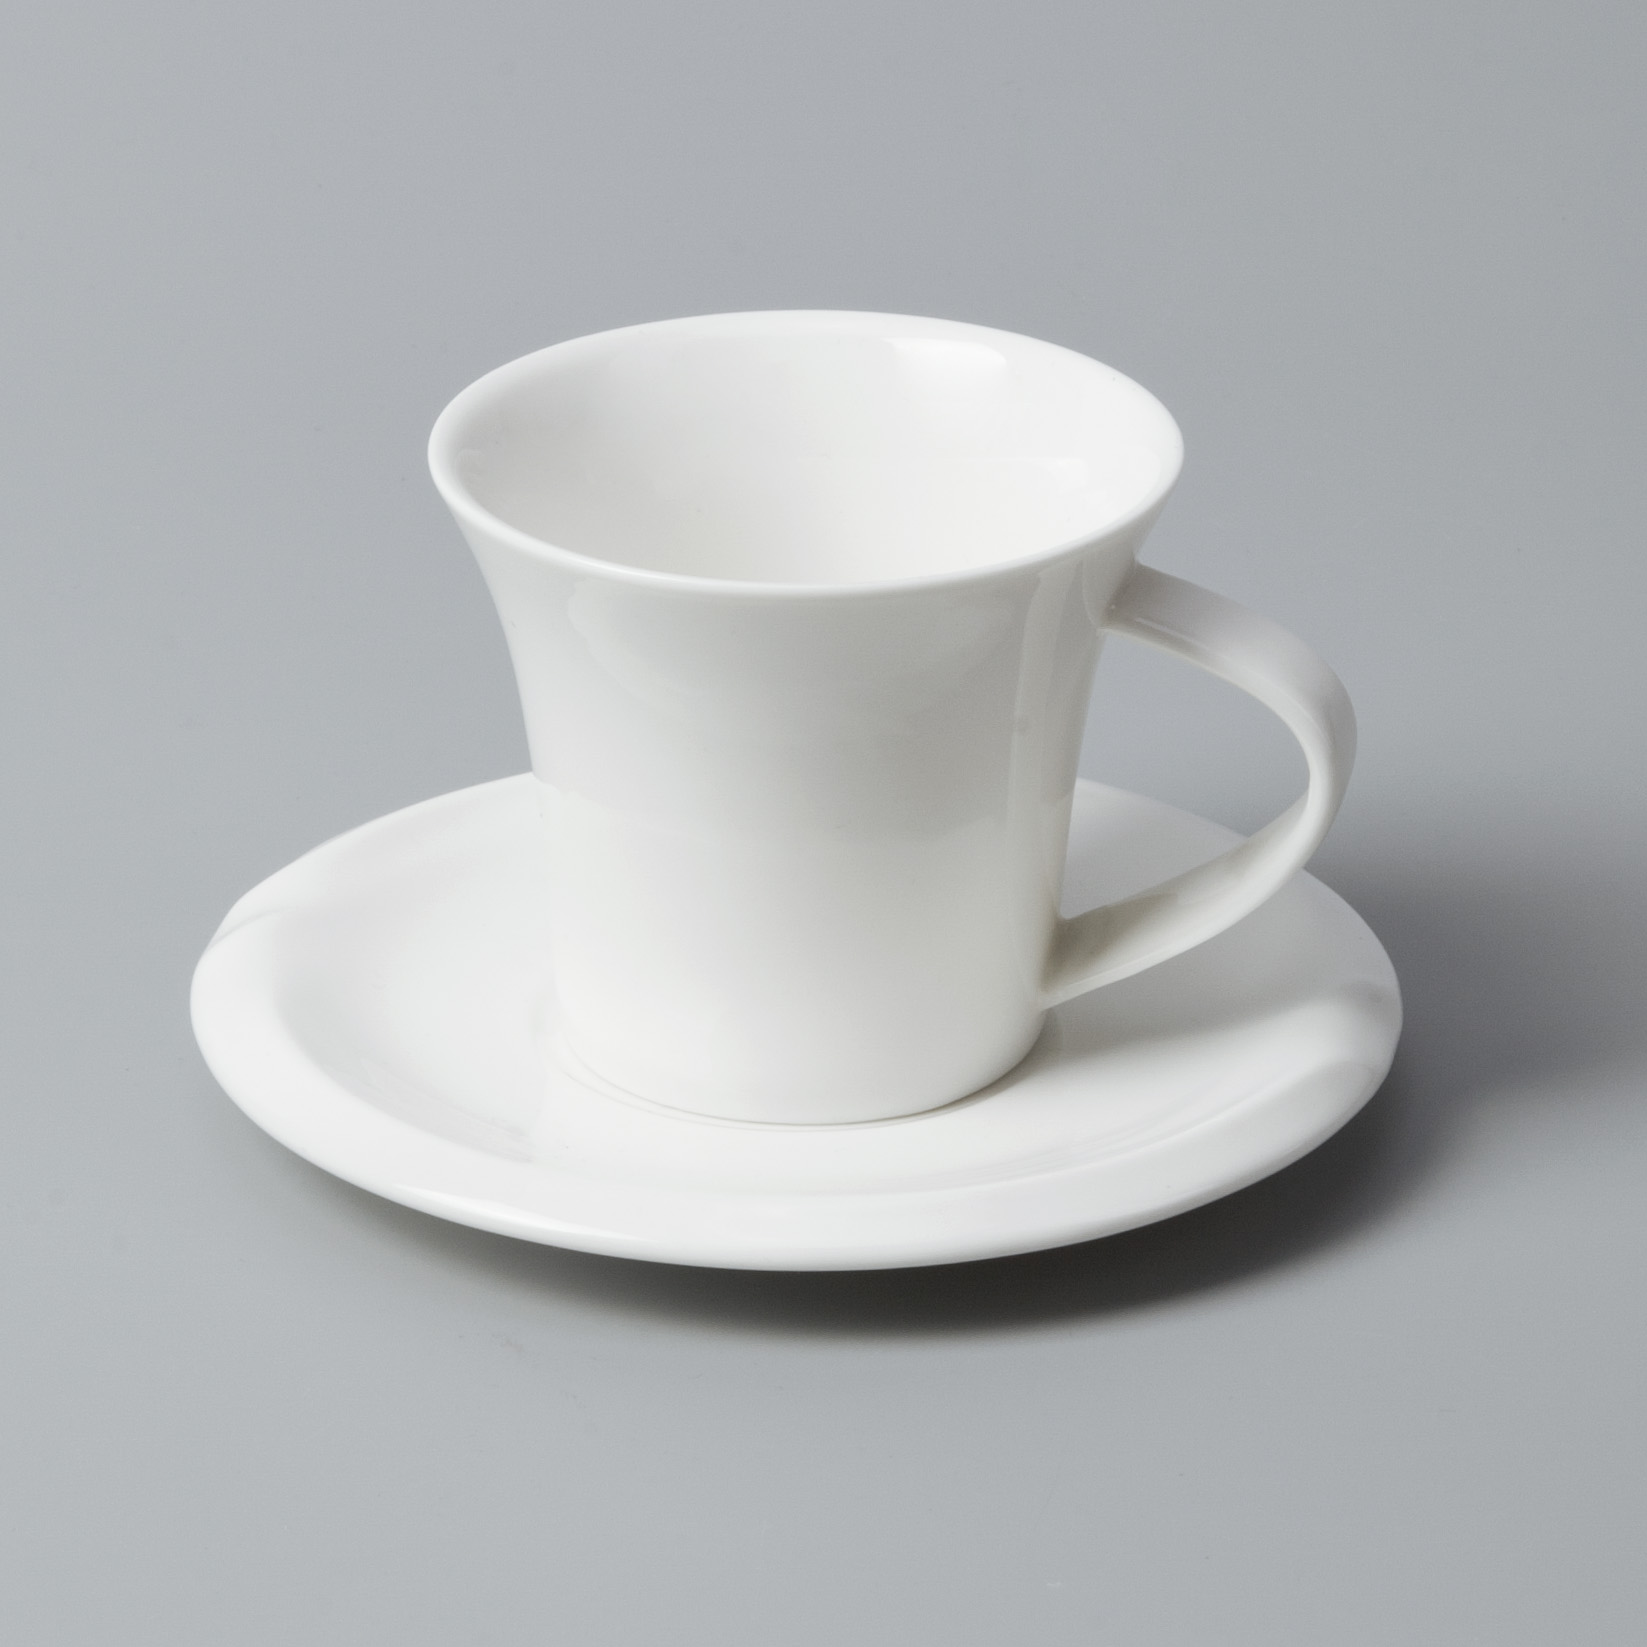 Custom white dinnerware sets for 8 factory for home-7